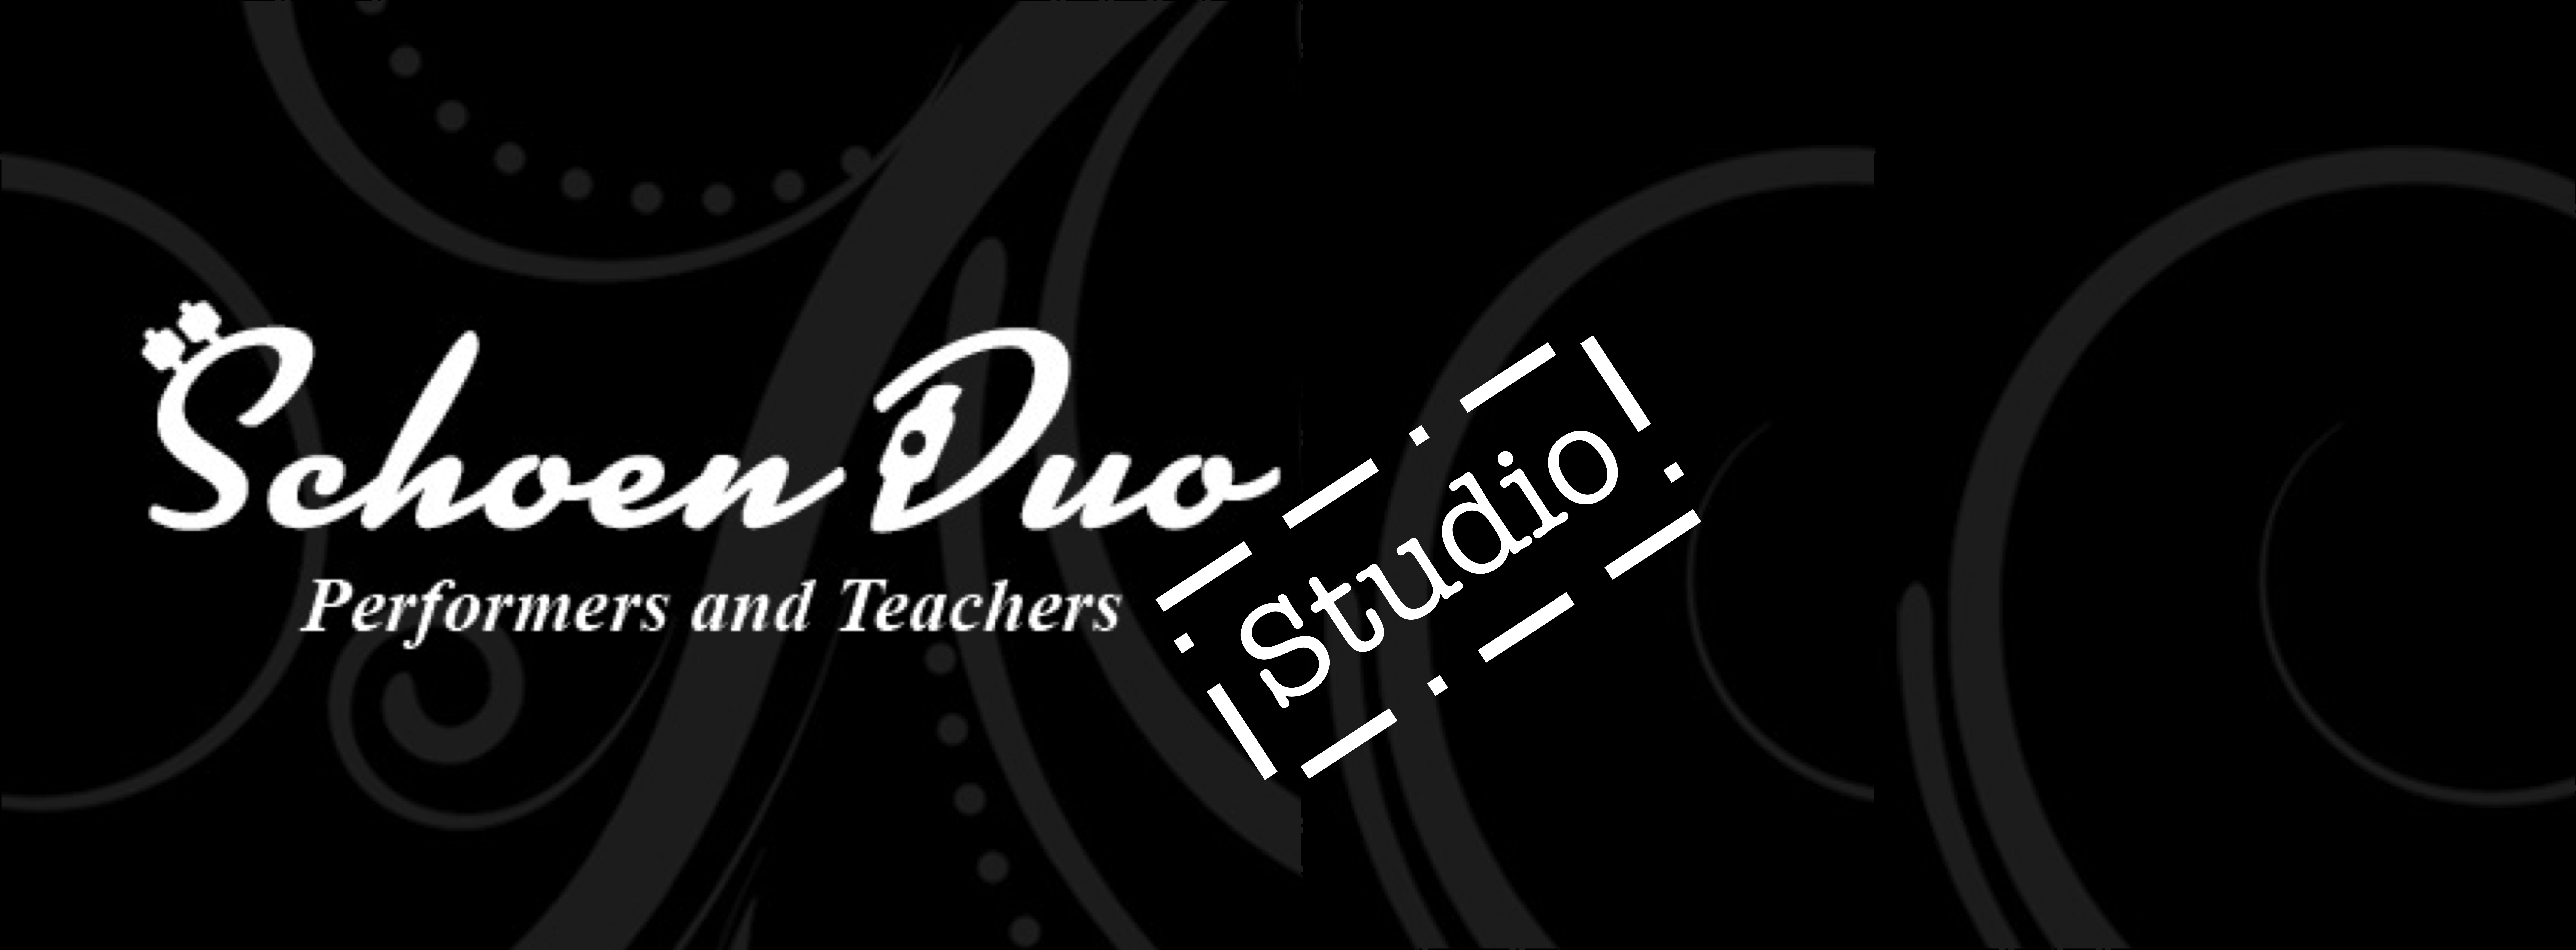 The Schoen Duo Studio Program